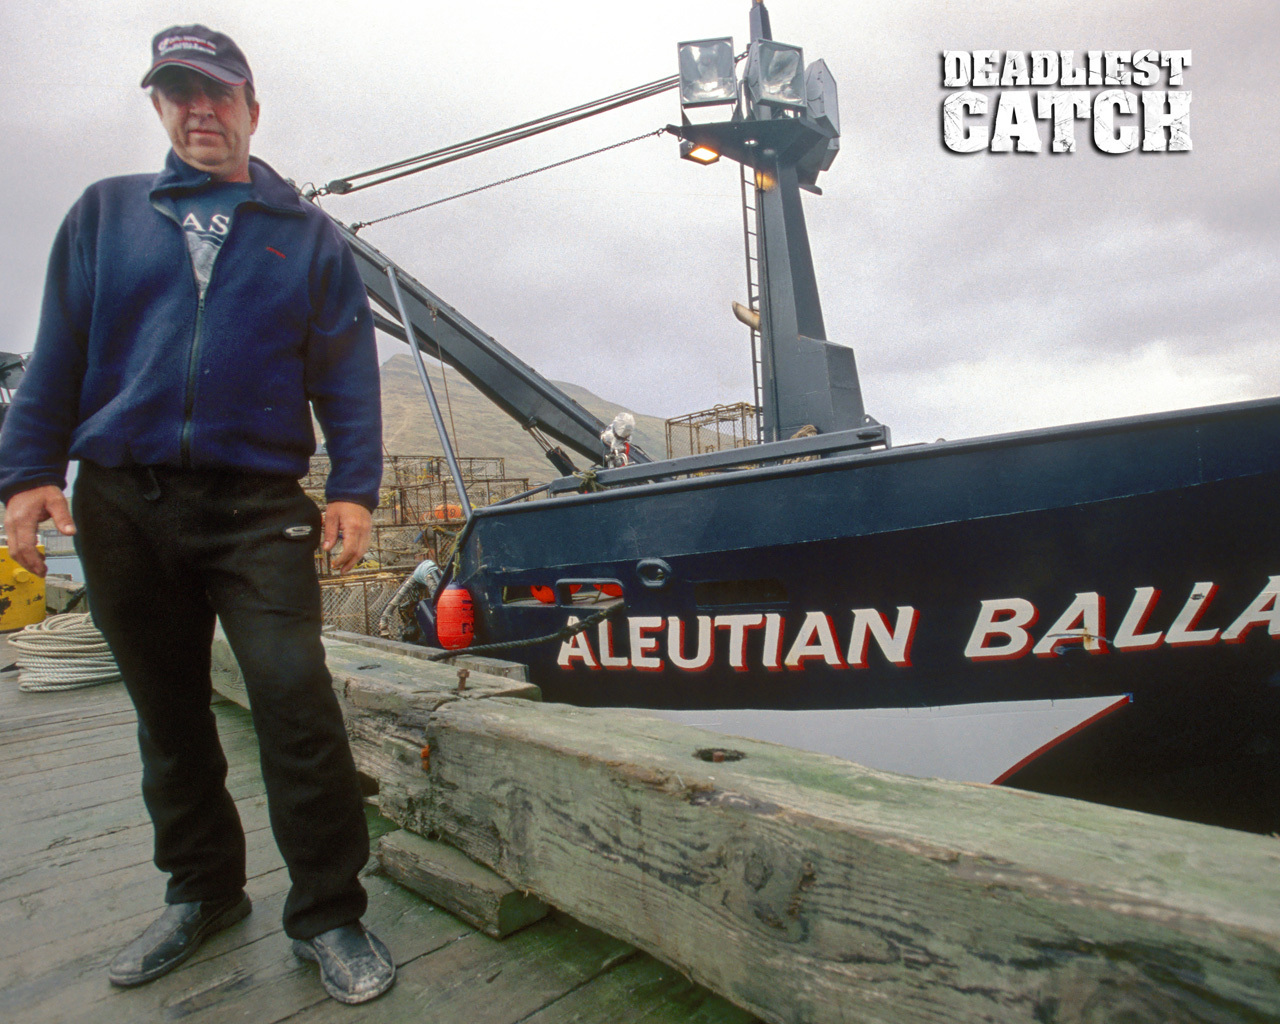 Aleutian Ballad Deadliest Catch Wallpaper